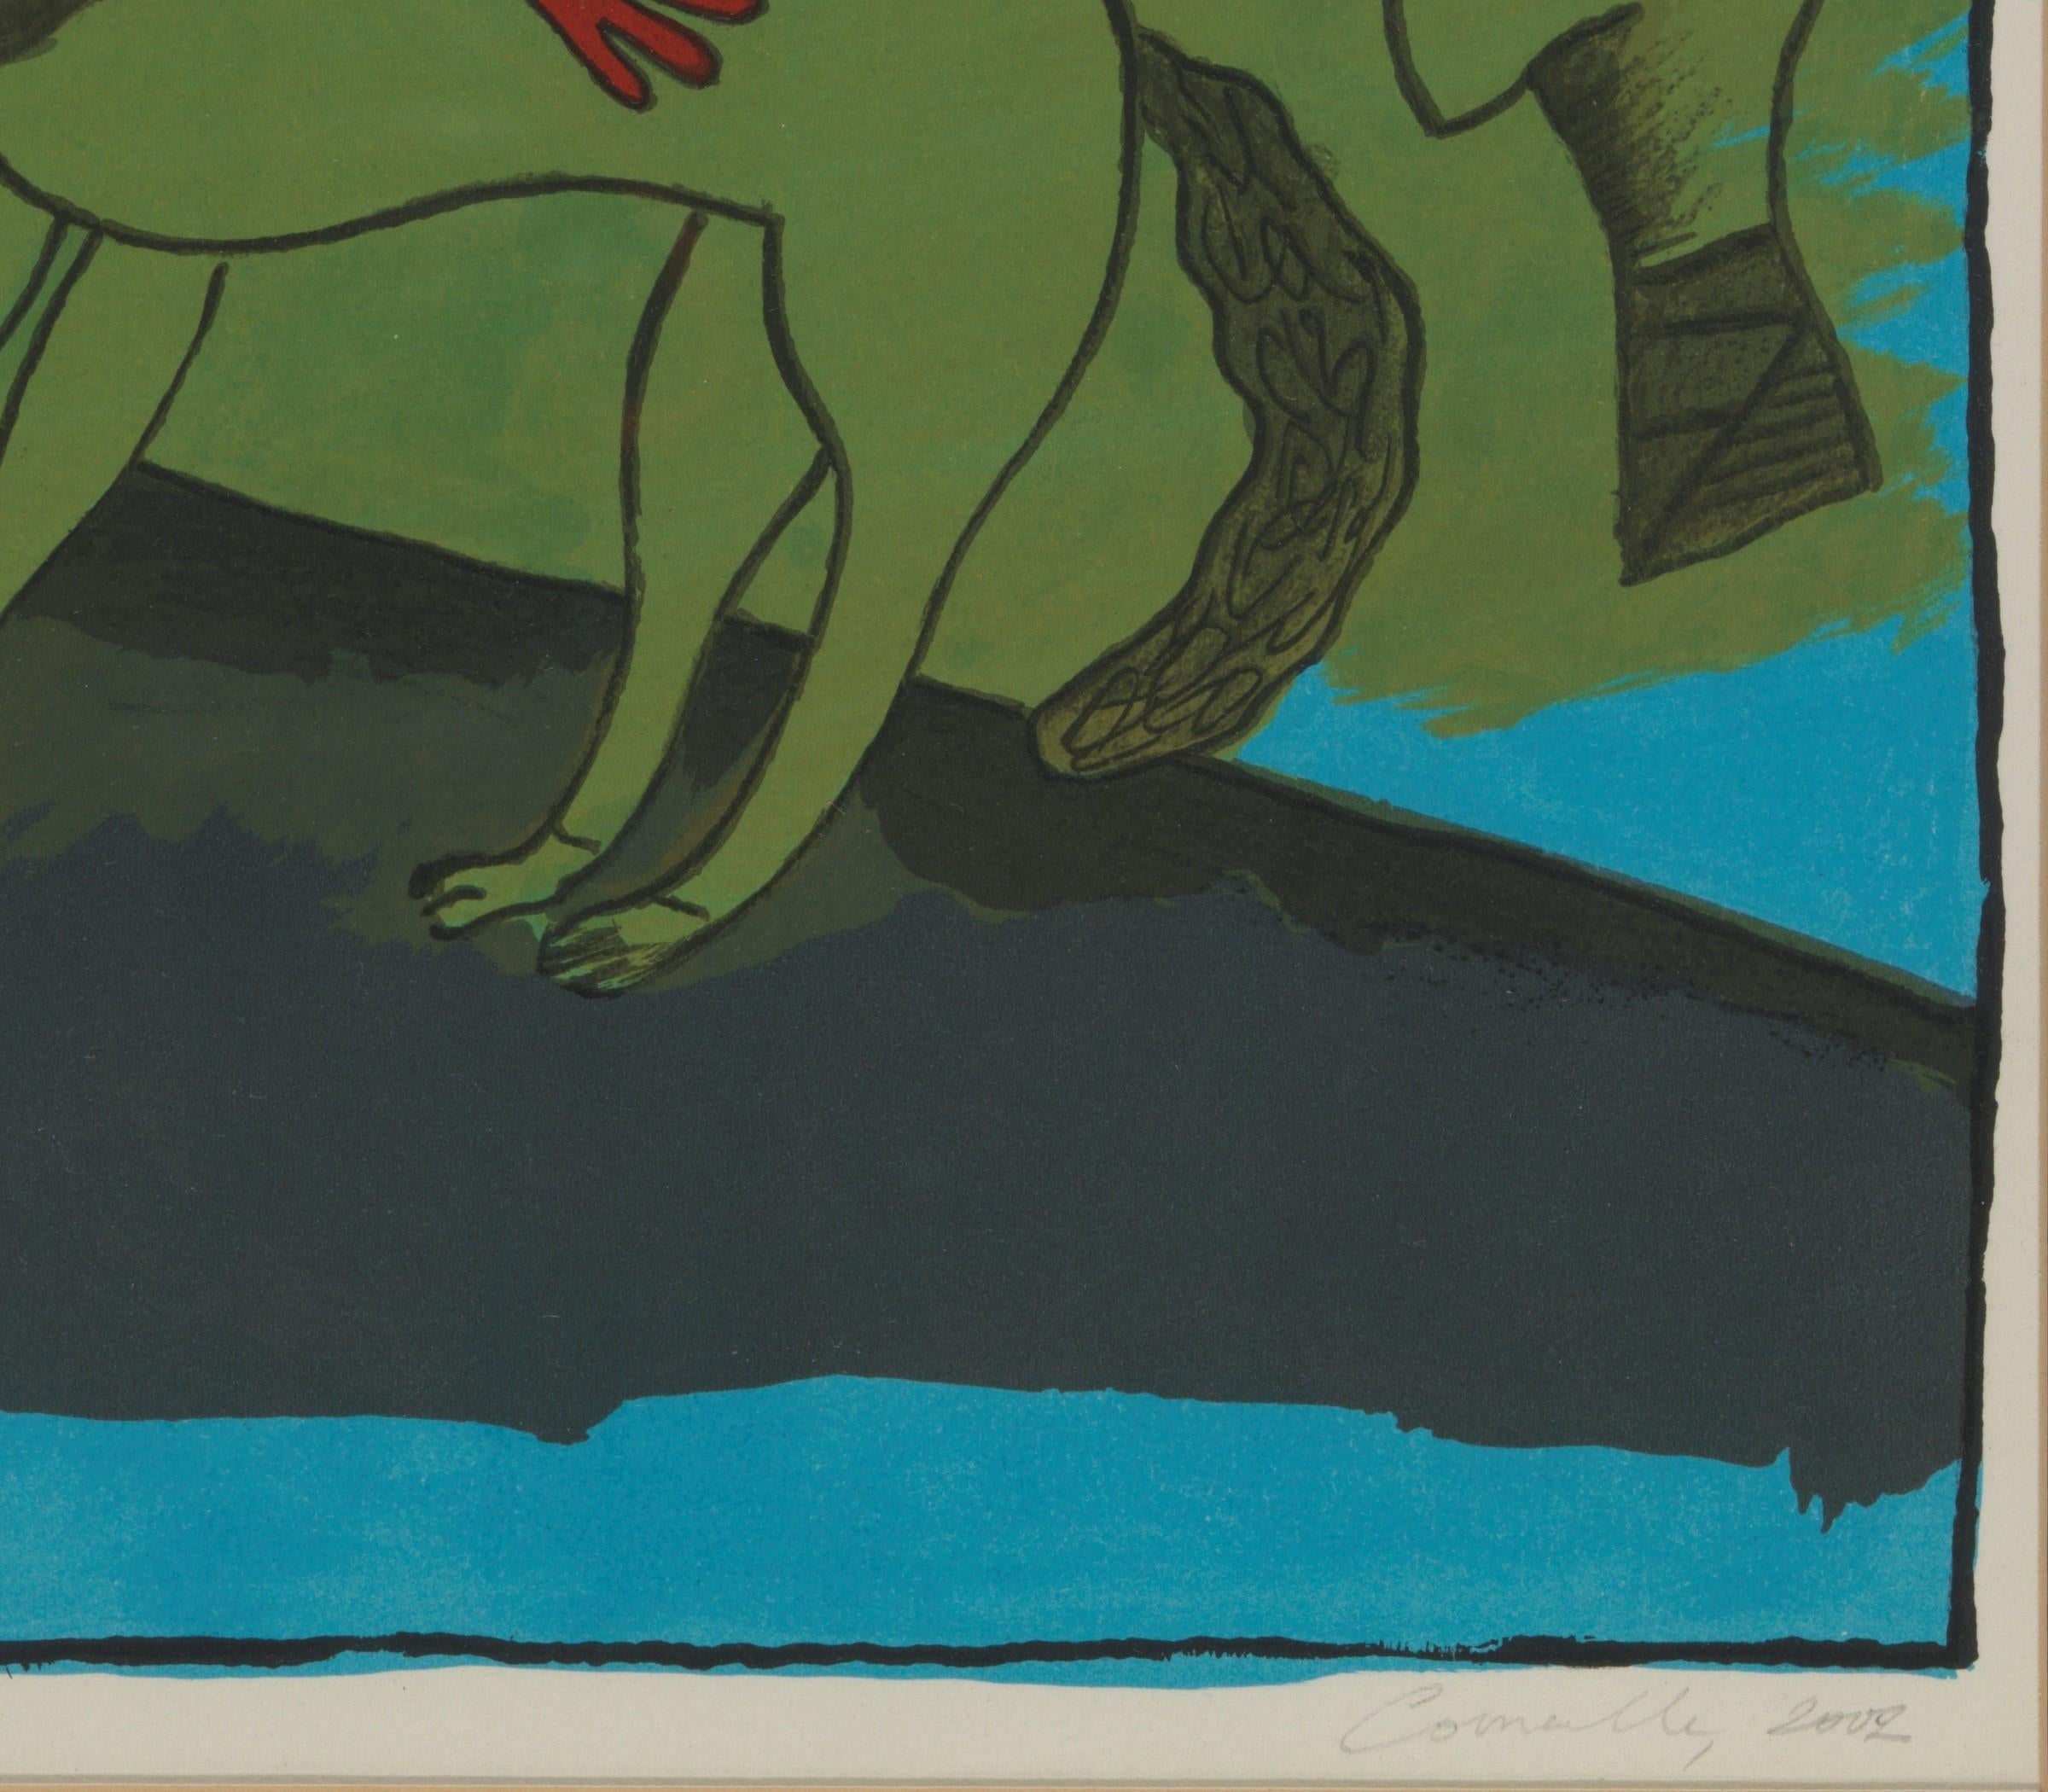 Cette belle peinture de Corneille Guillaume a été créée en 2002. Les voyages de l'artiste en Afrique du Nord, en Amérique du Nord, aux Antilles et en Amérique du Sud, entre autres, ont fortement inspiré son travail artistique dans lequel les femmes,